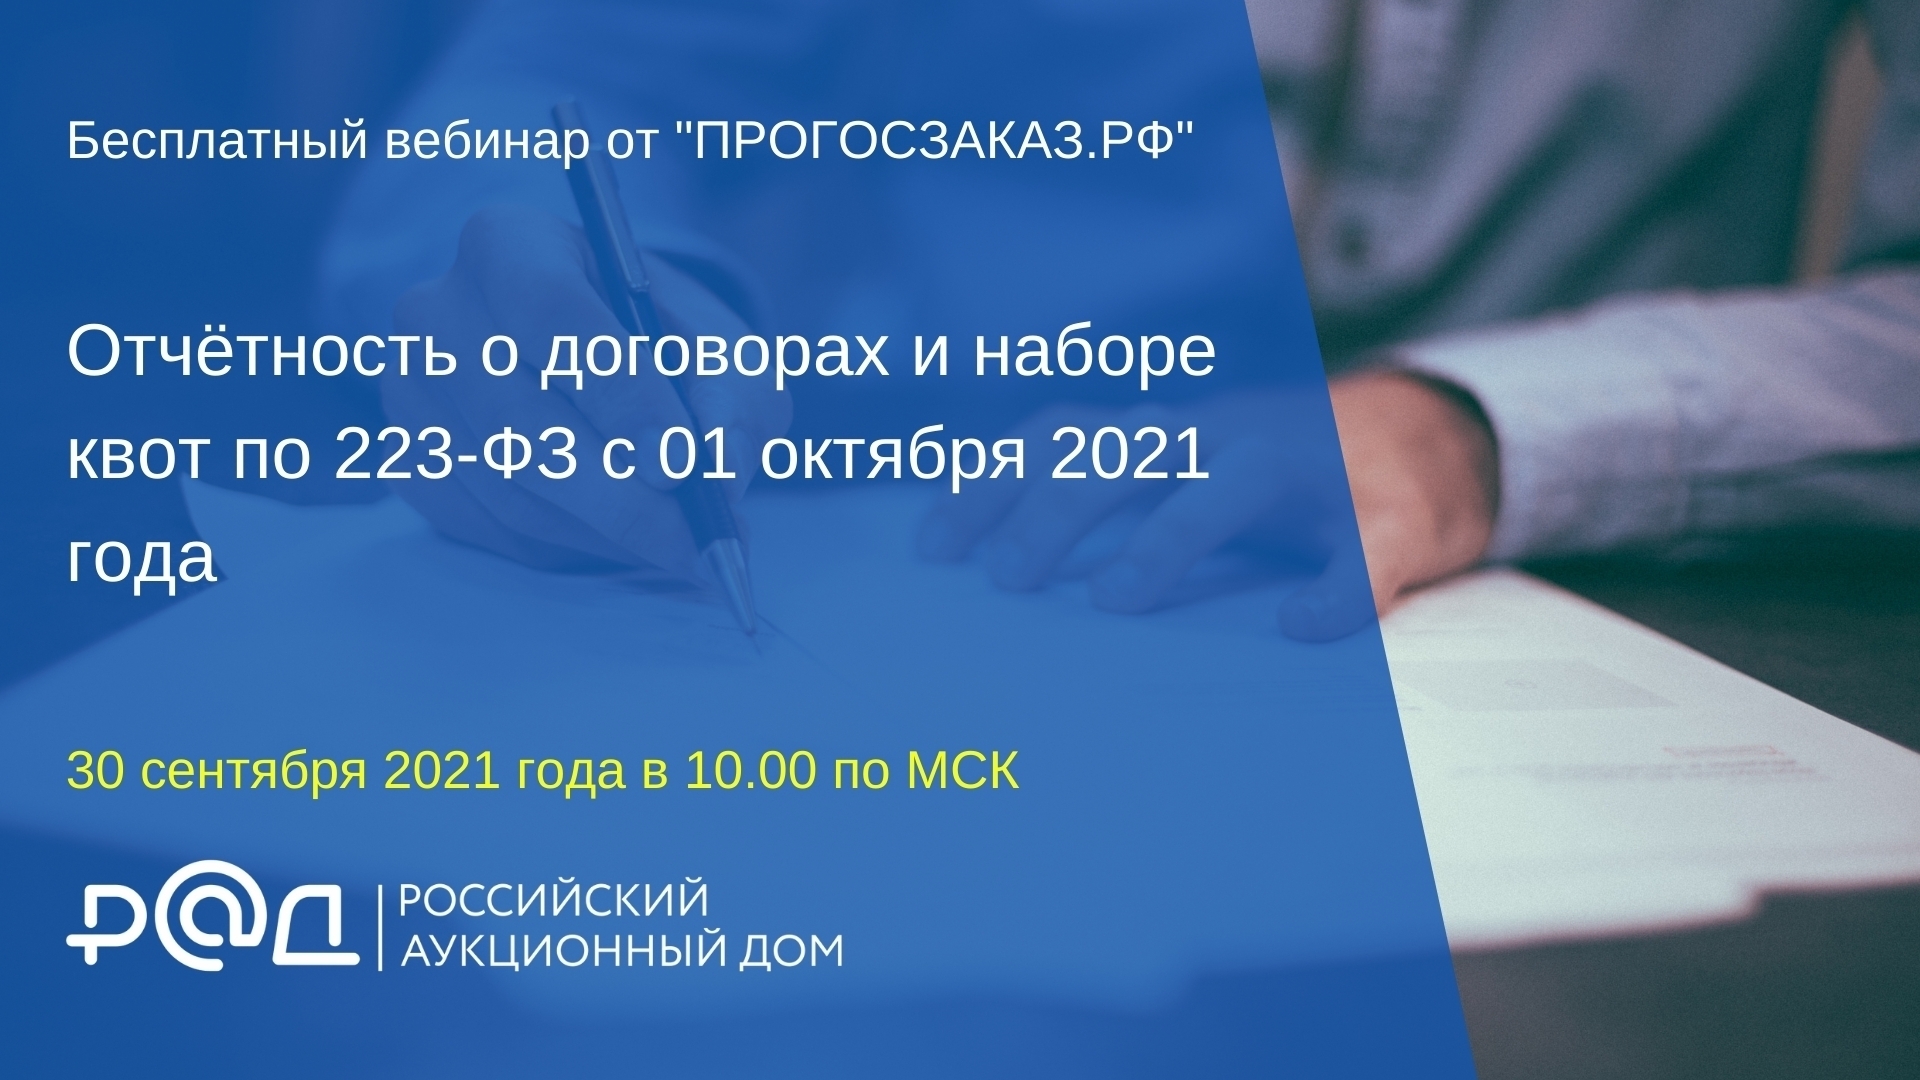 30 сентября 2021 года в 10:00 по МСК состоялся вебинар на тему «Отчётность о договорах и наборе квот по 223-ФЗ с 01 октября 2021 года»